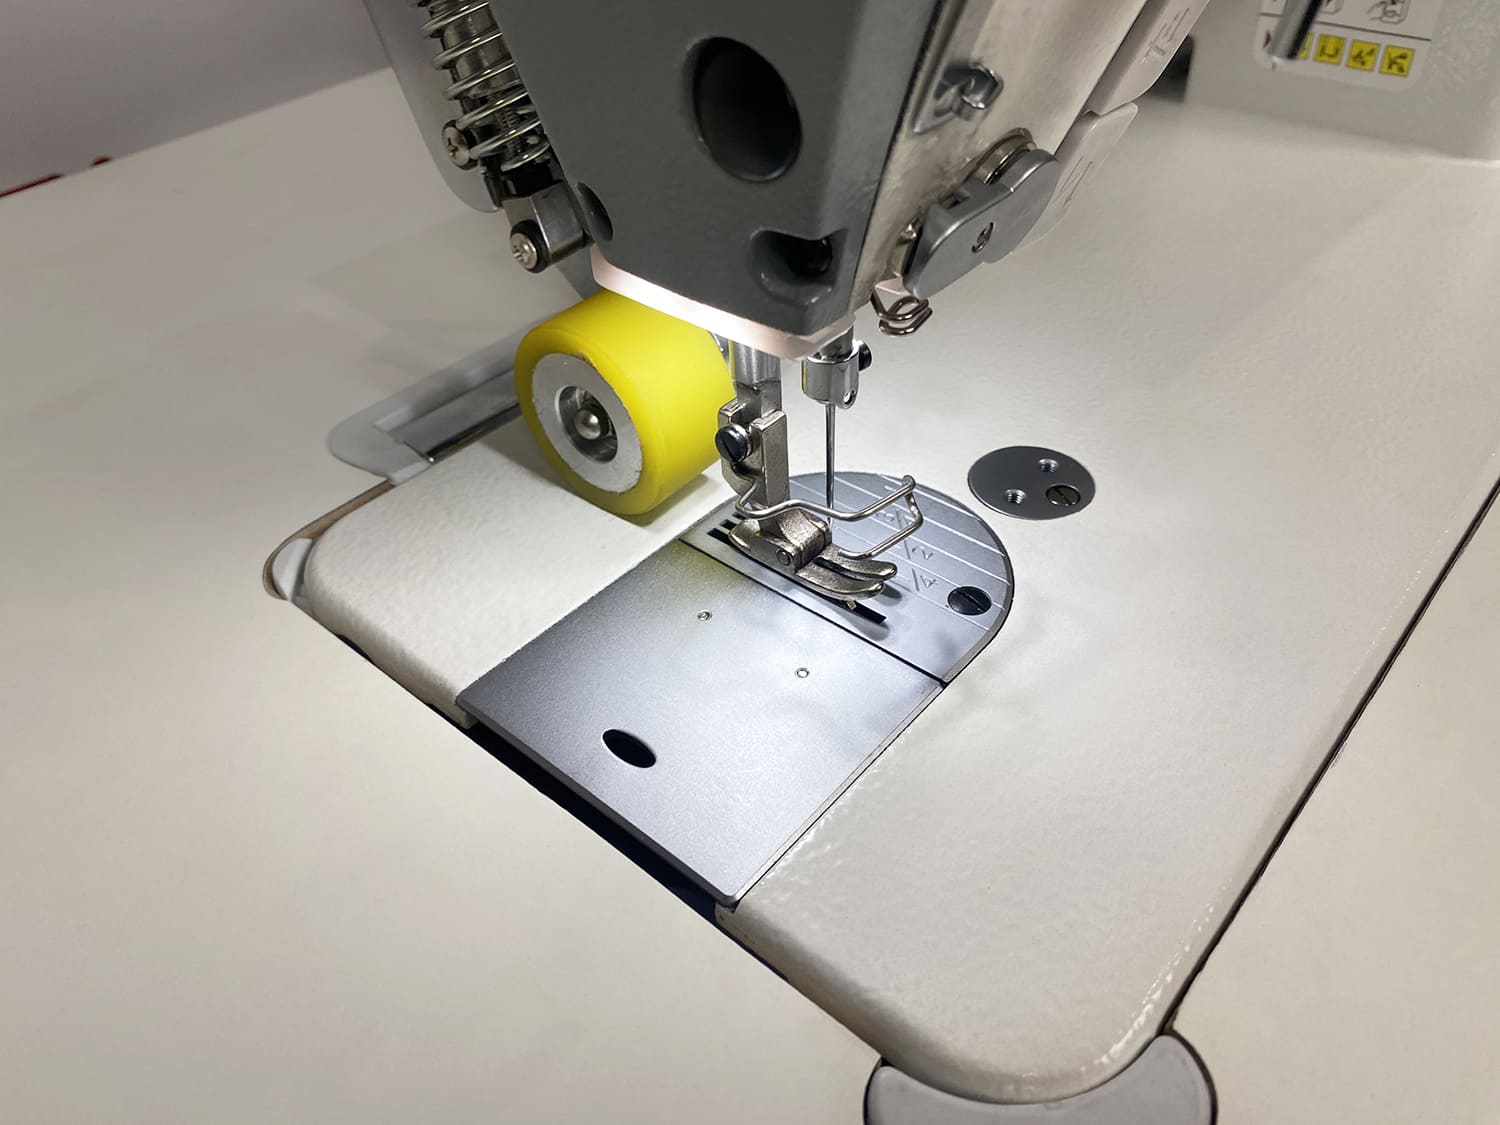 Прямострочная промышленная швейная машина с пуллером Aurora A-9H-P (два подвижных ножа, закрытая смазка)